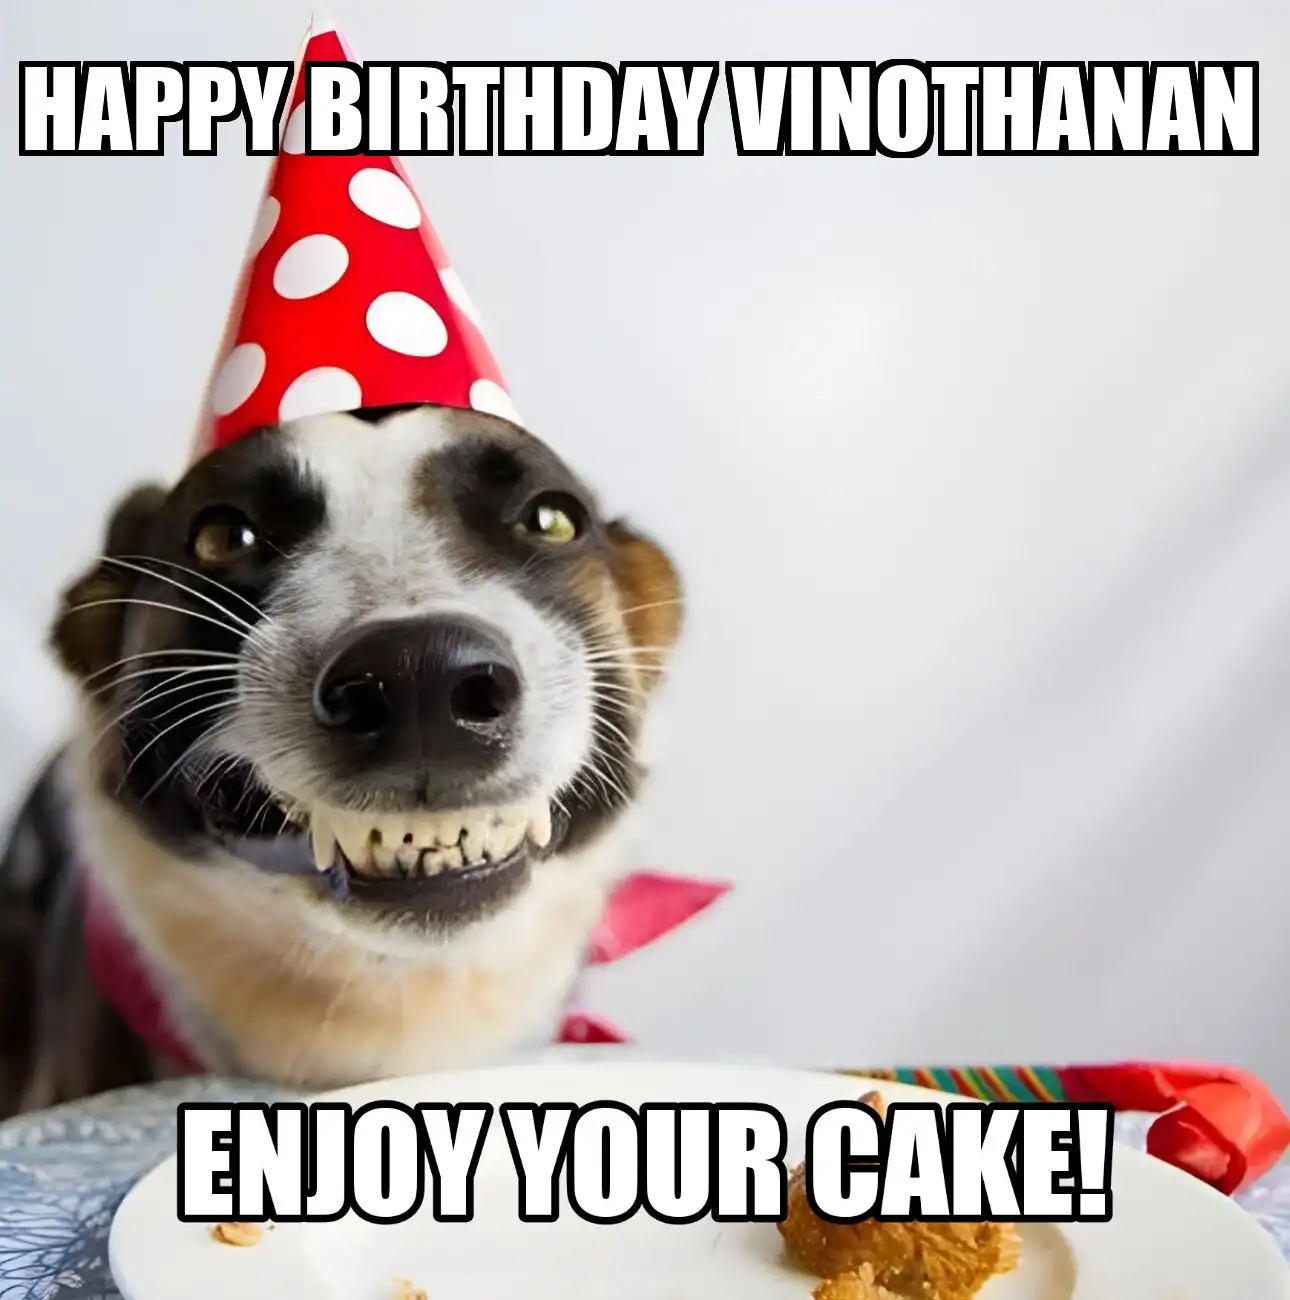 Happy Birthday Vinothanan Enjoy Your Cake Dog Meme